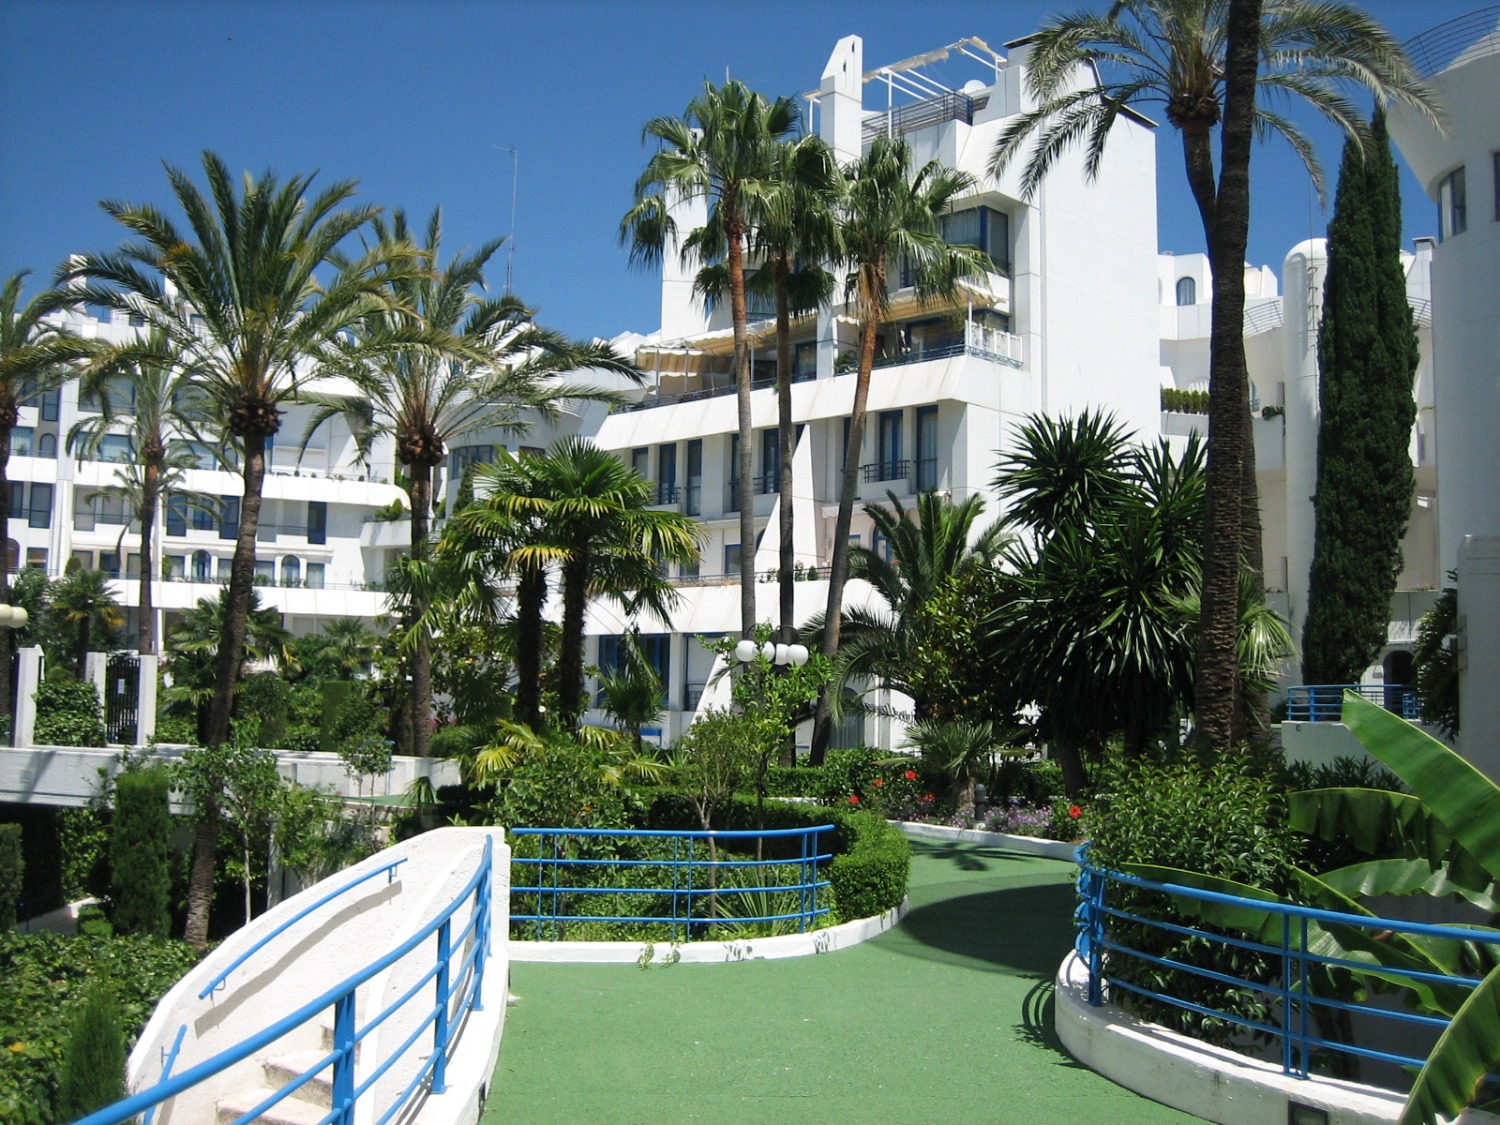 Marbella hus, anden strand linje, havudsigt